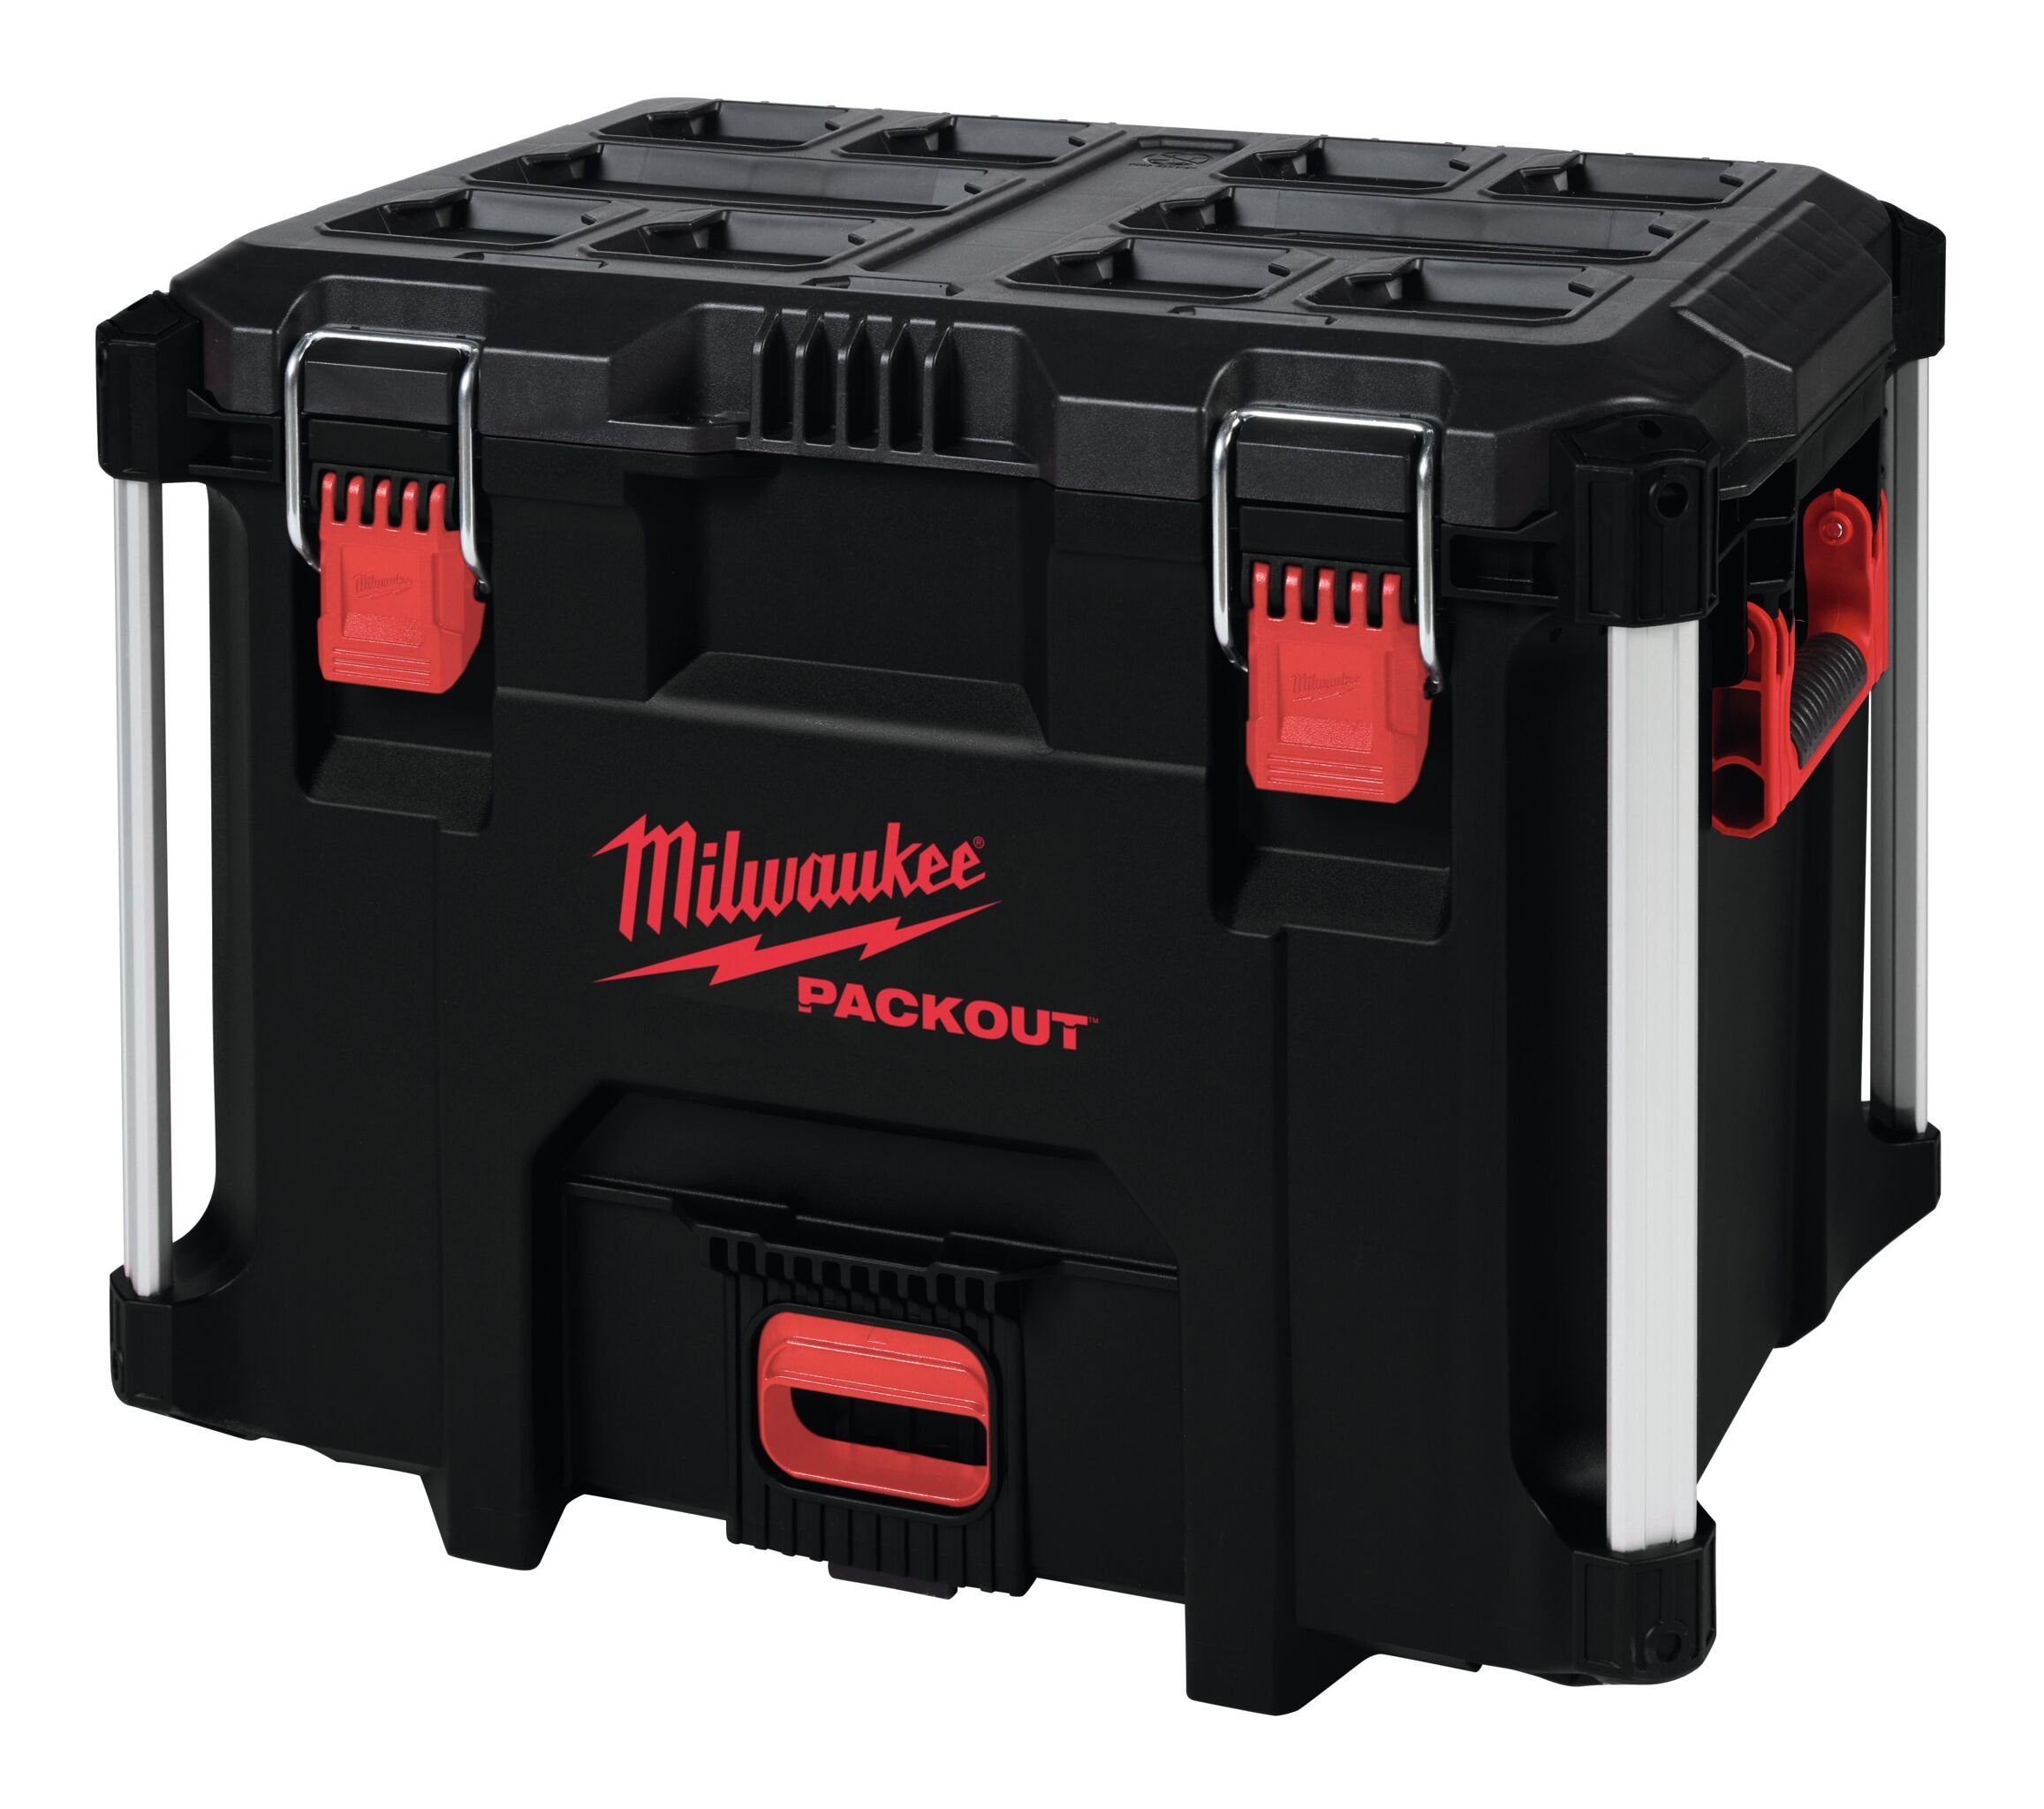 Milwaukee Werkzeugkoffer, Packout Koffer XL | Werkzeugkoffer